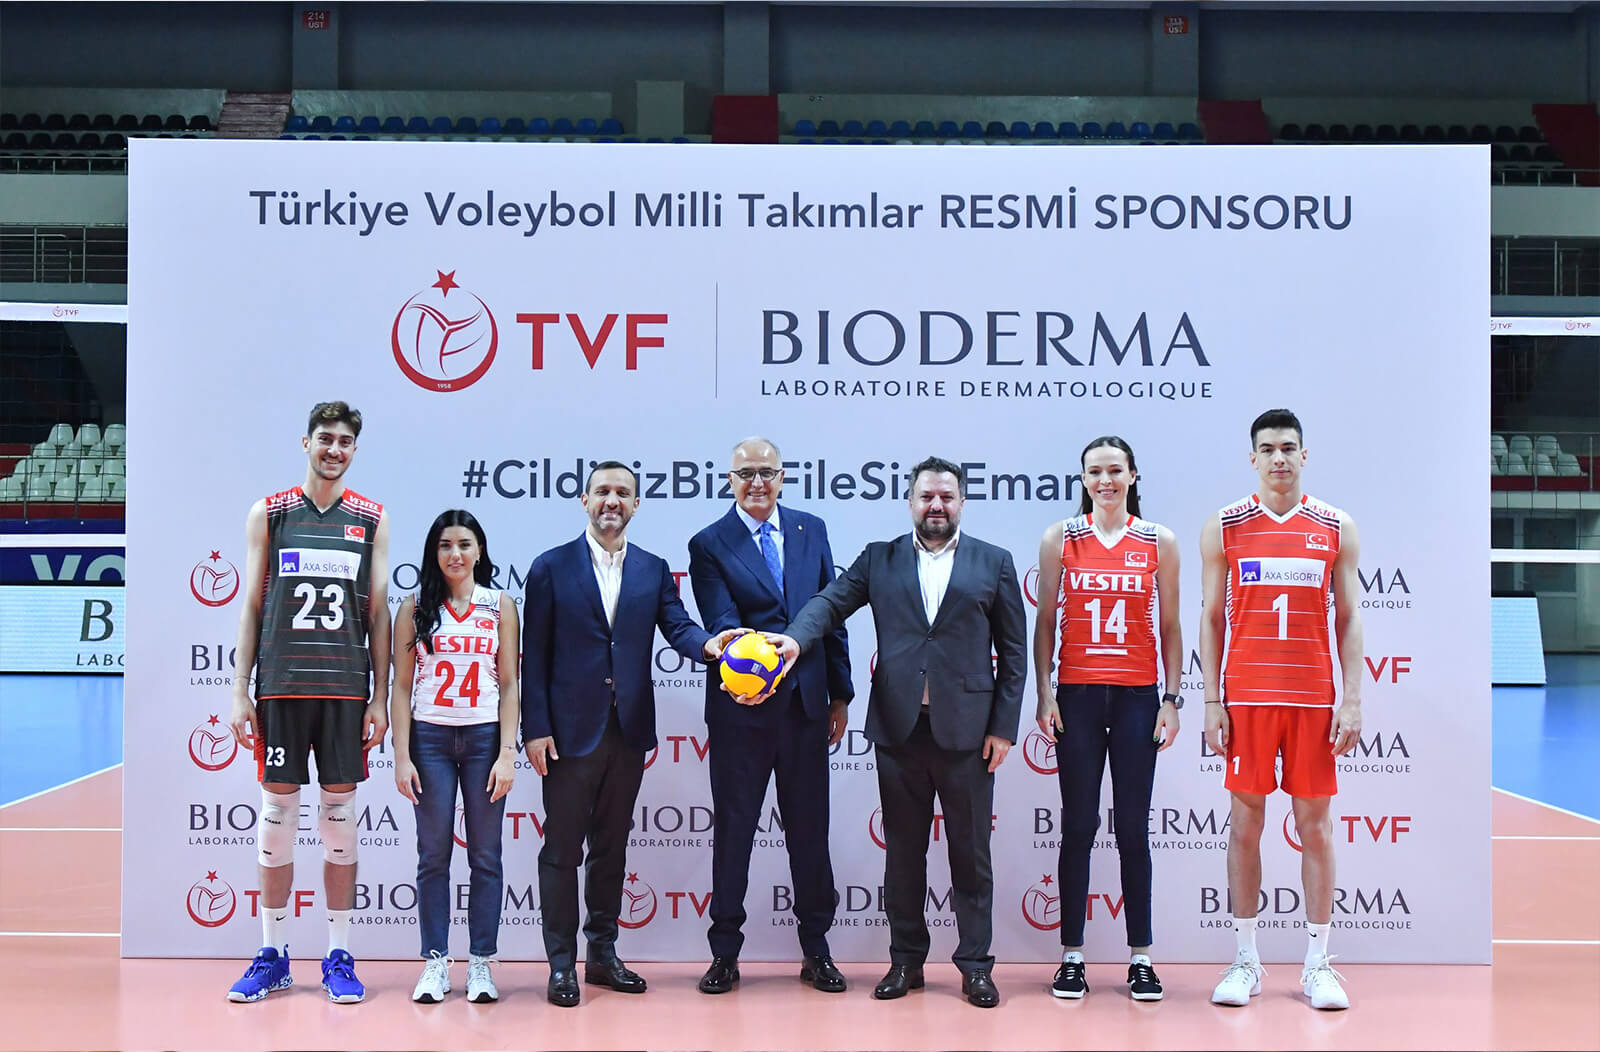 Bioderma, Türkiye Voleybol Federasyonu ile Sponsorluk Anlaşmasını 2 Yıl Uzattı